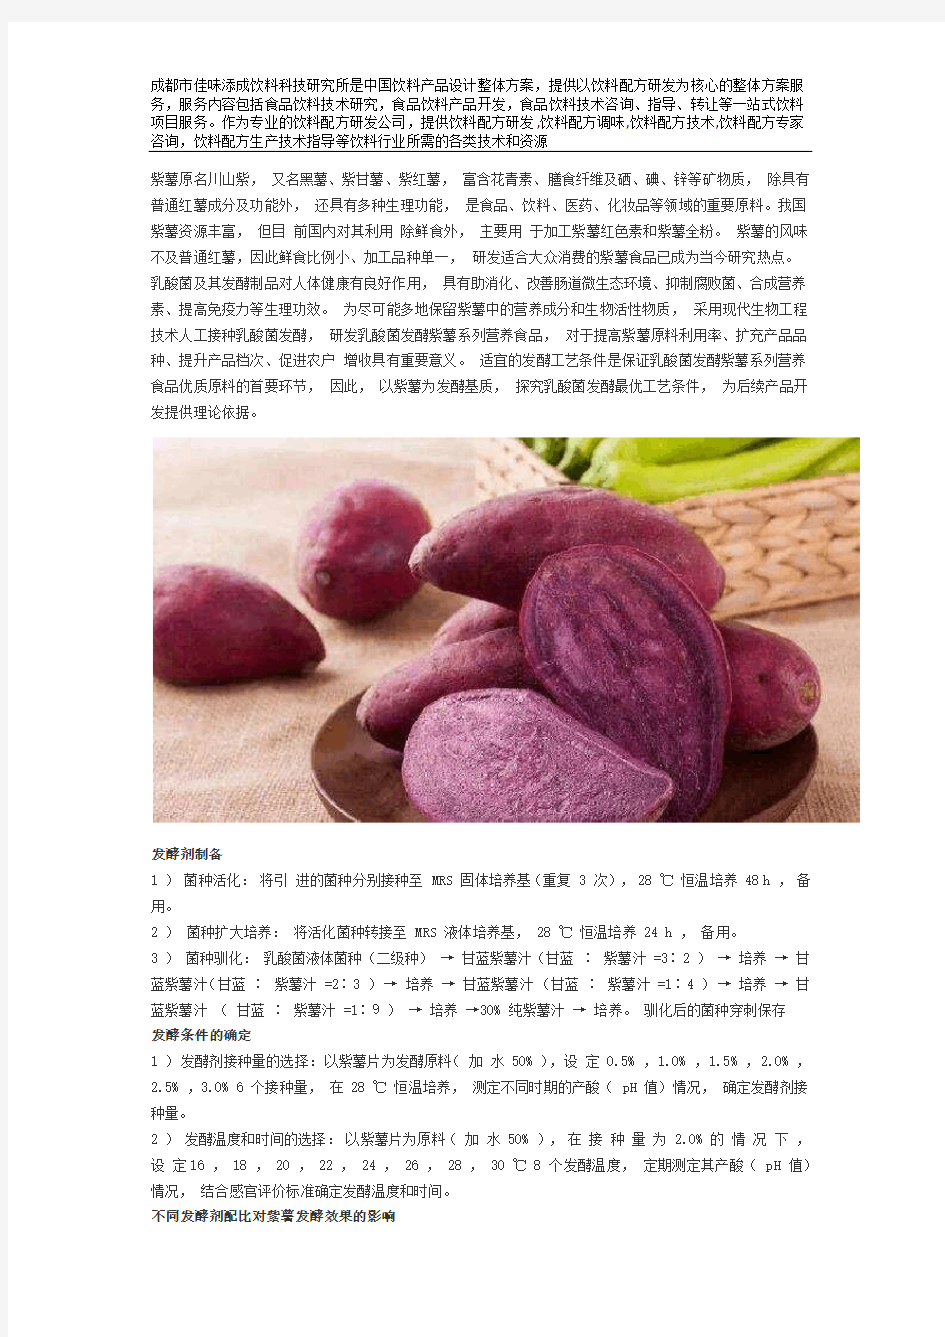 乳酸菌发酵紫薯饮料配方的工艺技术研究